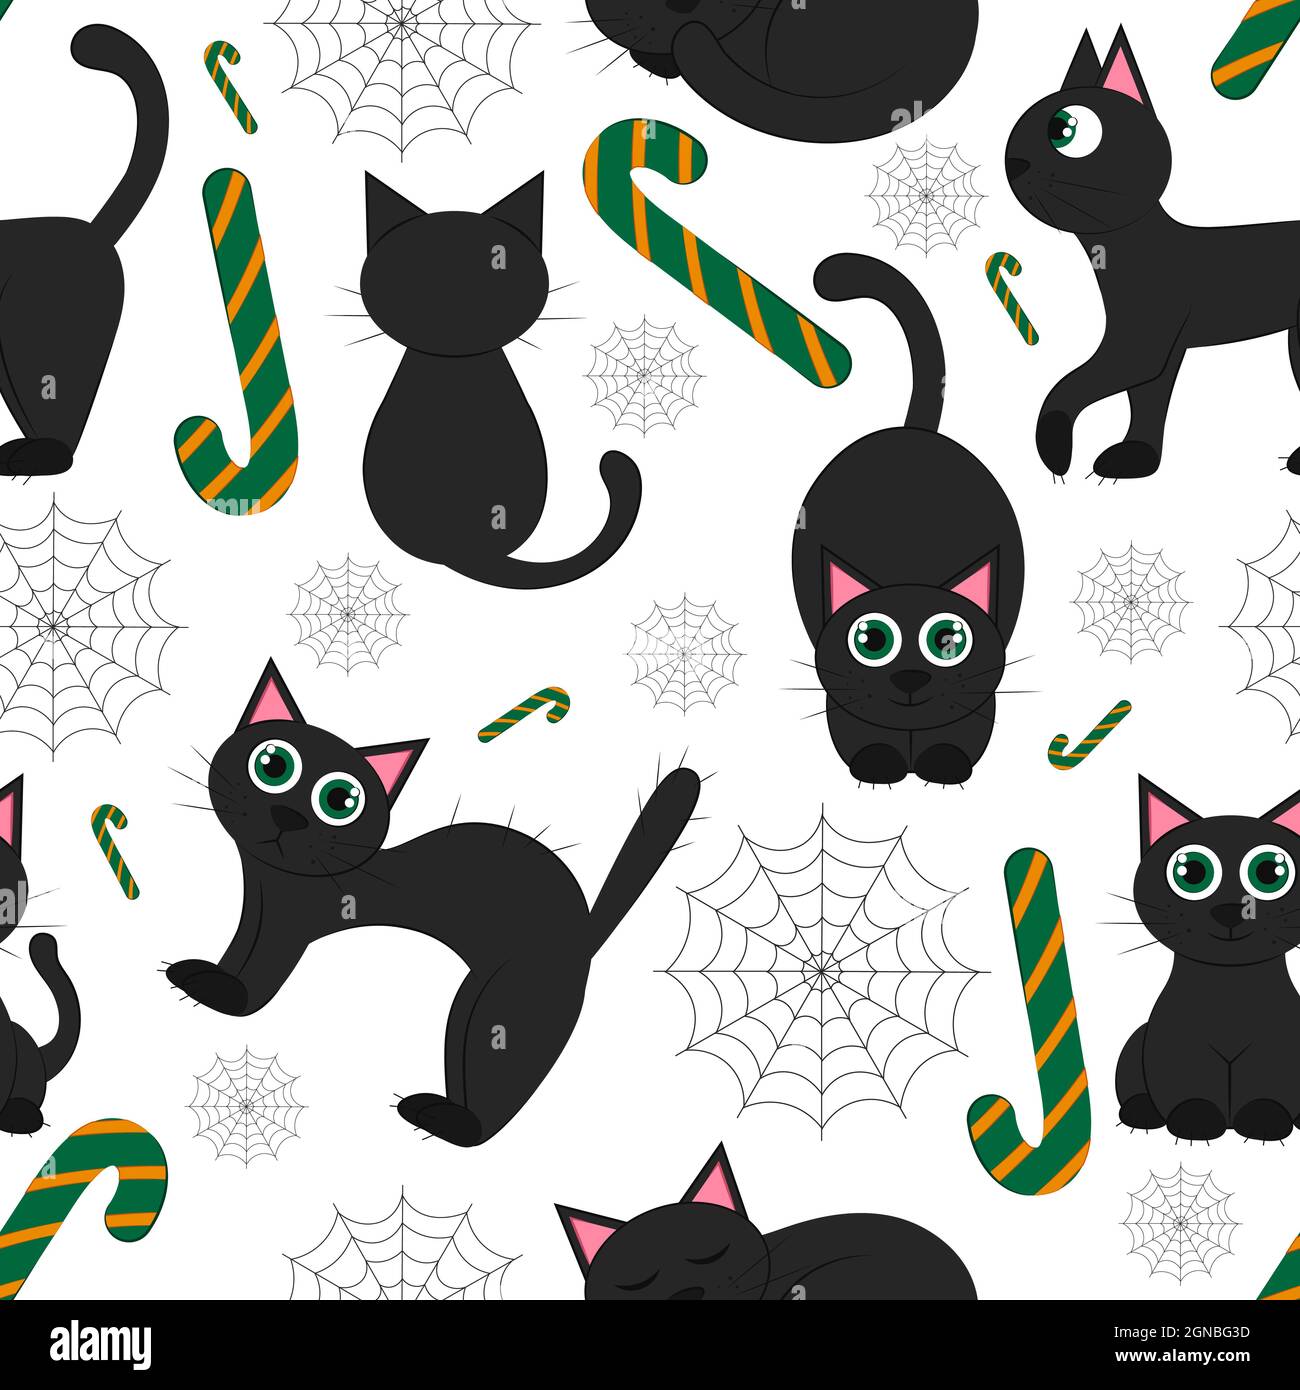 Motif sans couture Halloween chat noir sur fond blanc. Illustration vectorielle plate. Papiers peints, textiles, bannières. Thème festif - avec chat. Illustration de Vecteur